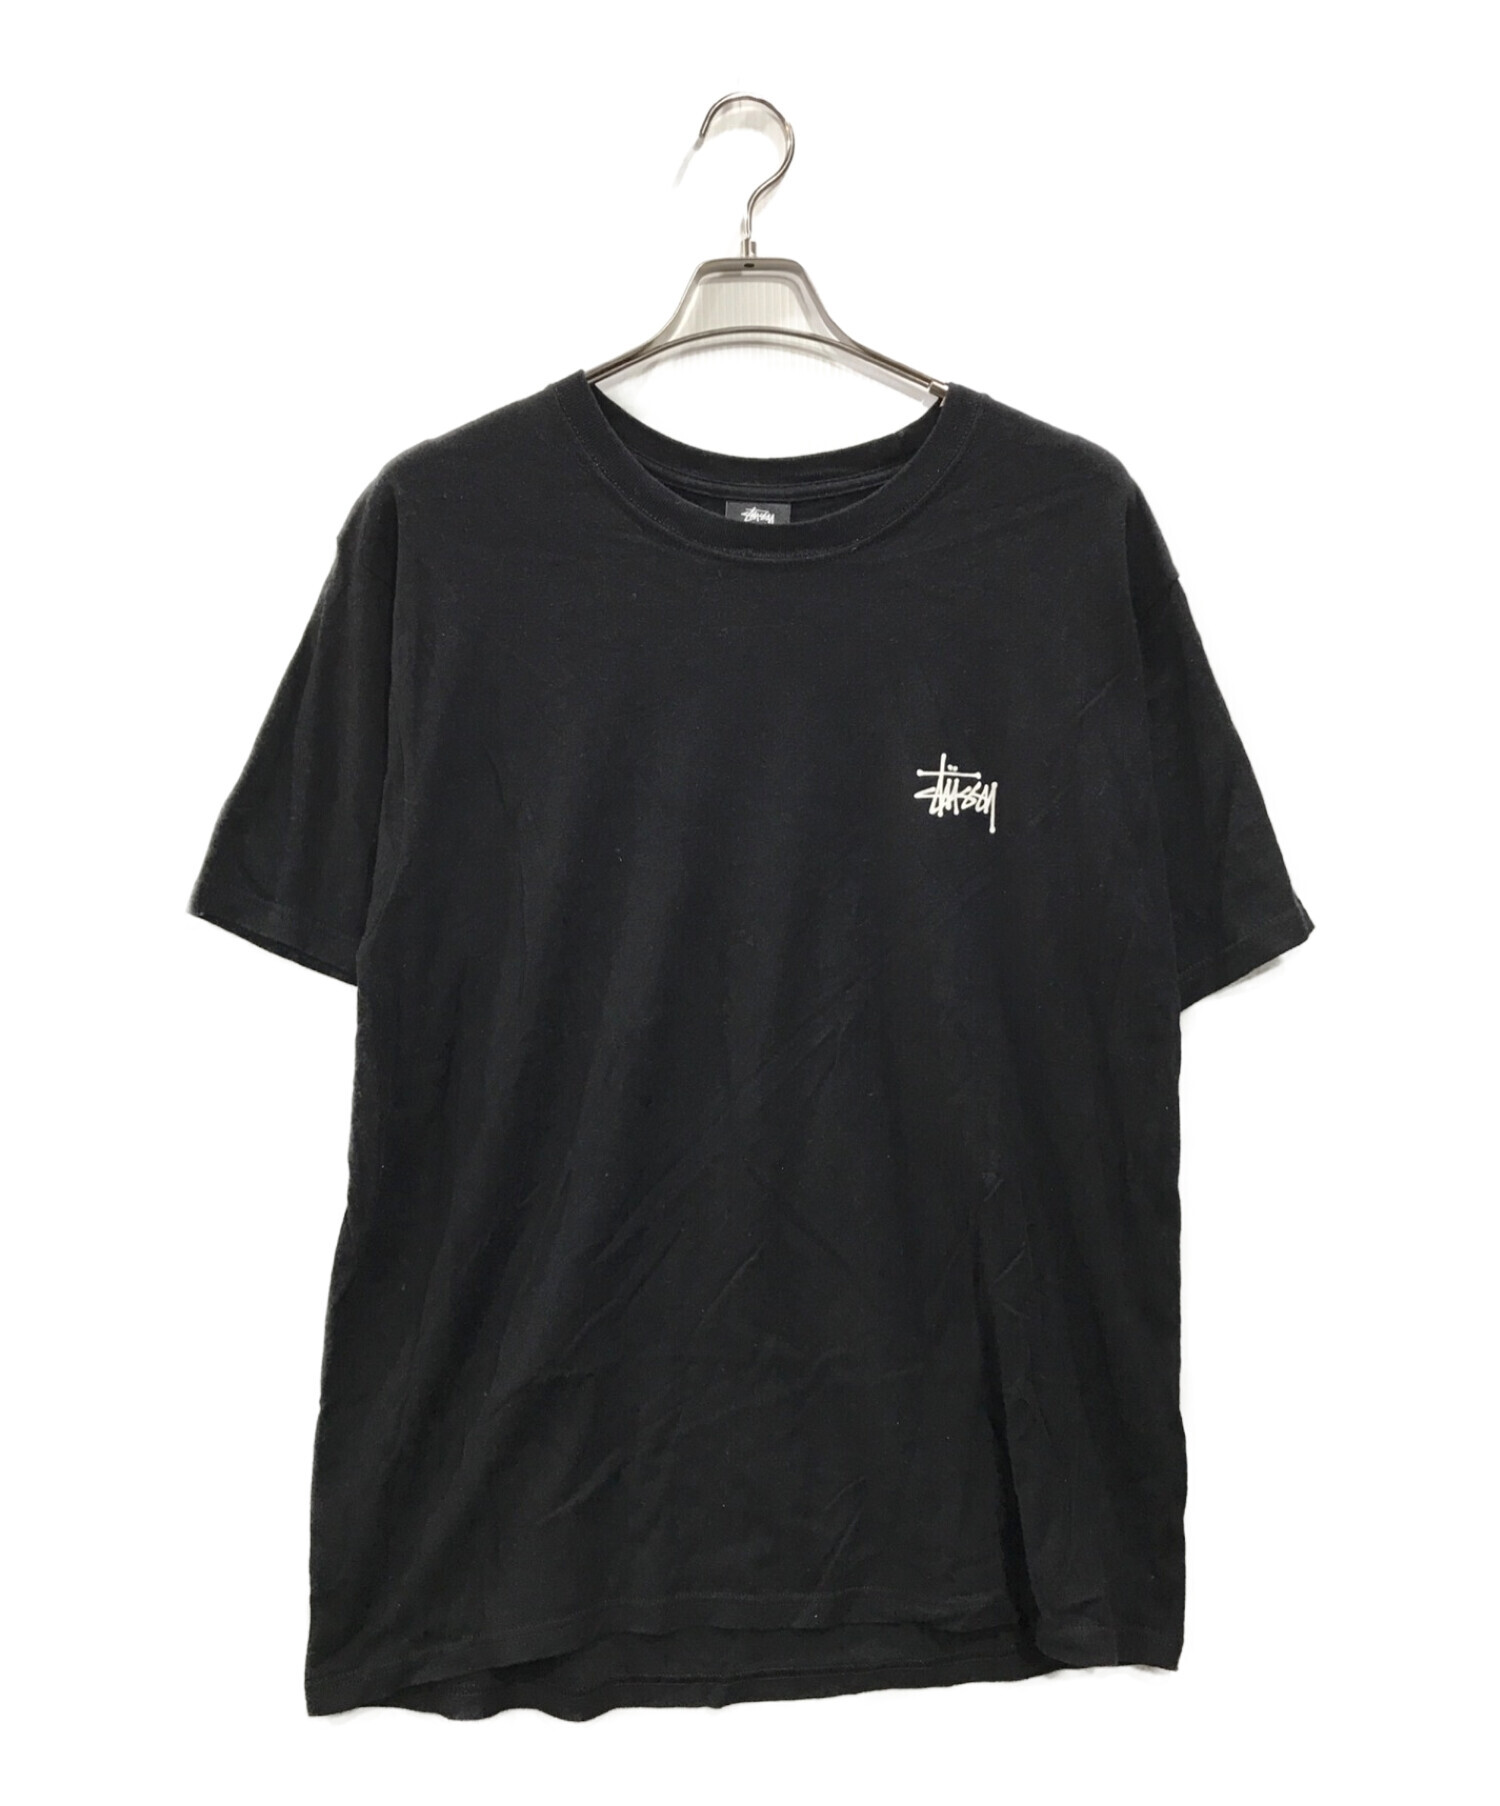 最高カラー/黒タグ80s】ステューシー ストックロゴプリント Tシャツ L ...